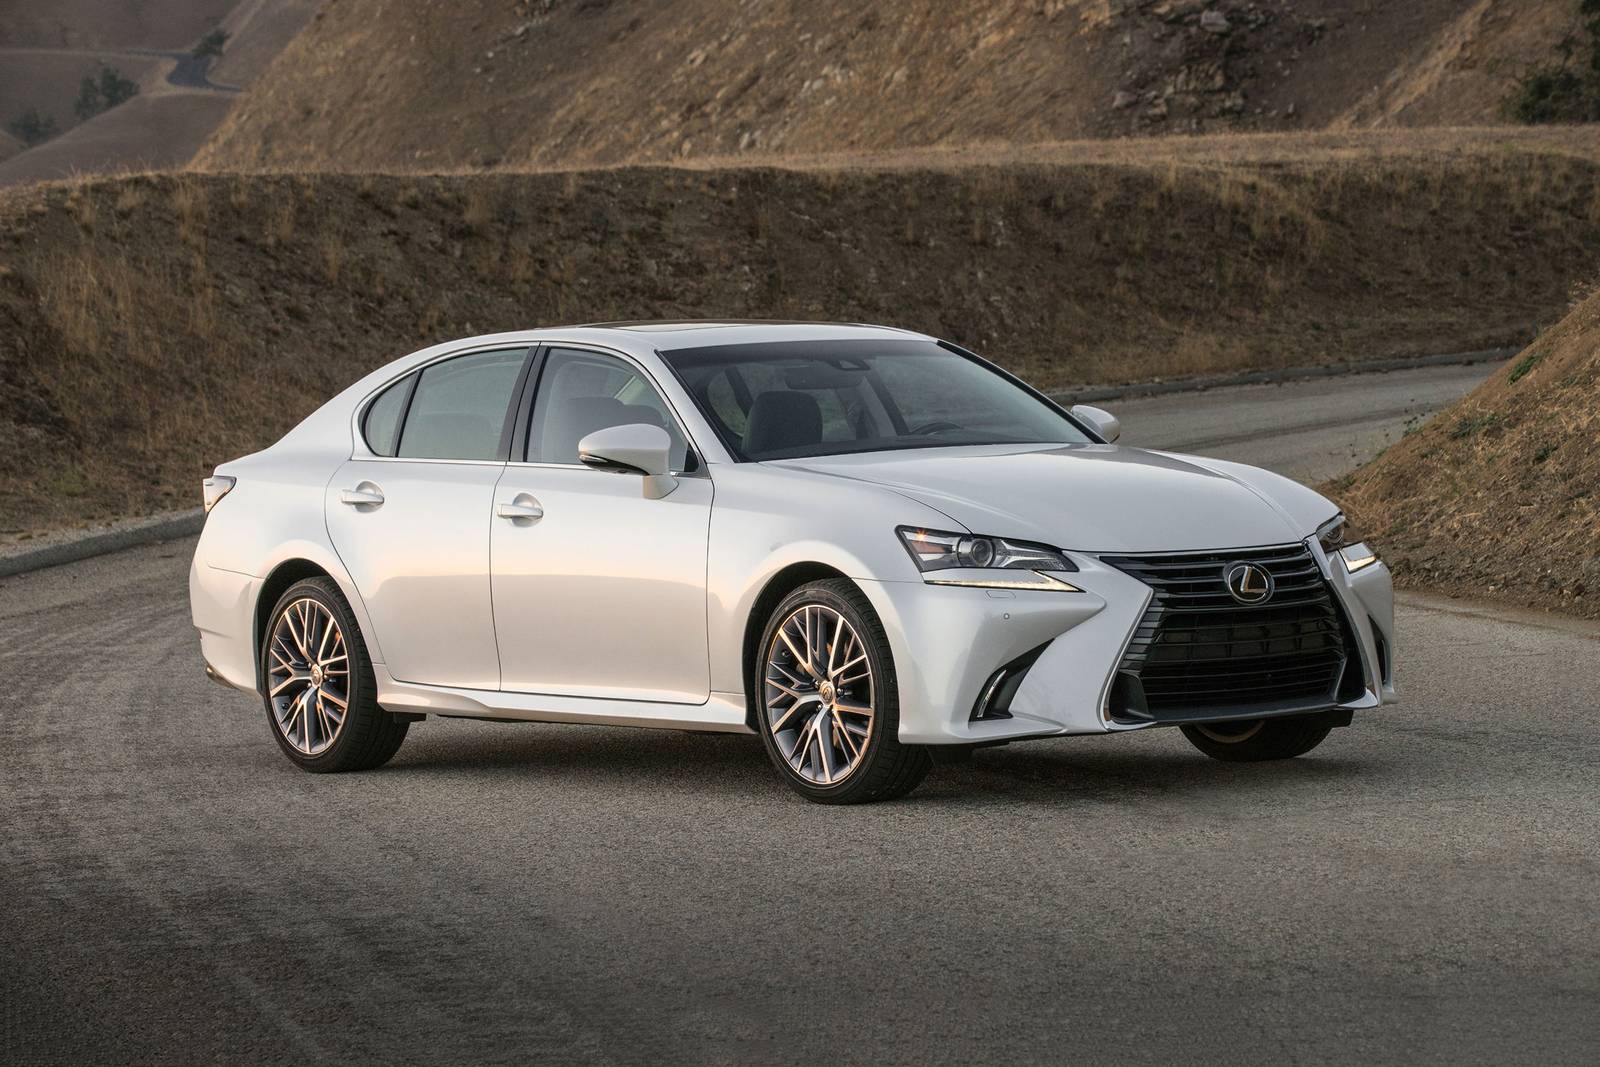 2018 Lexus Gs 350 Review Ratings Edmunds